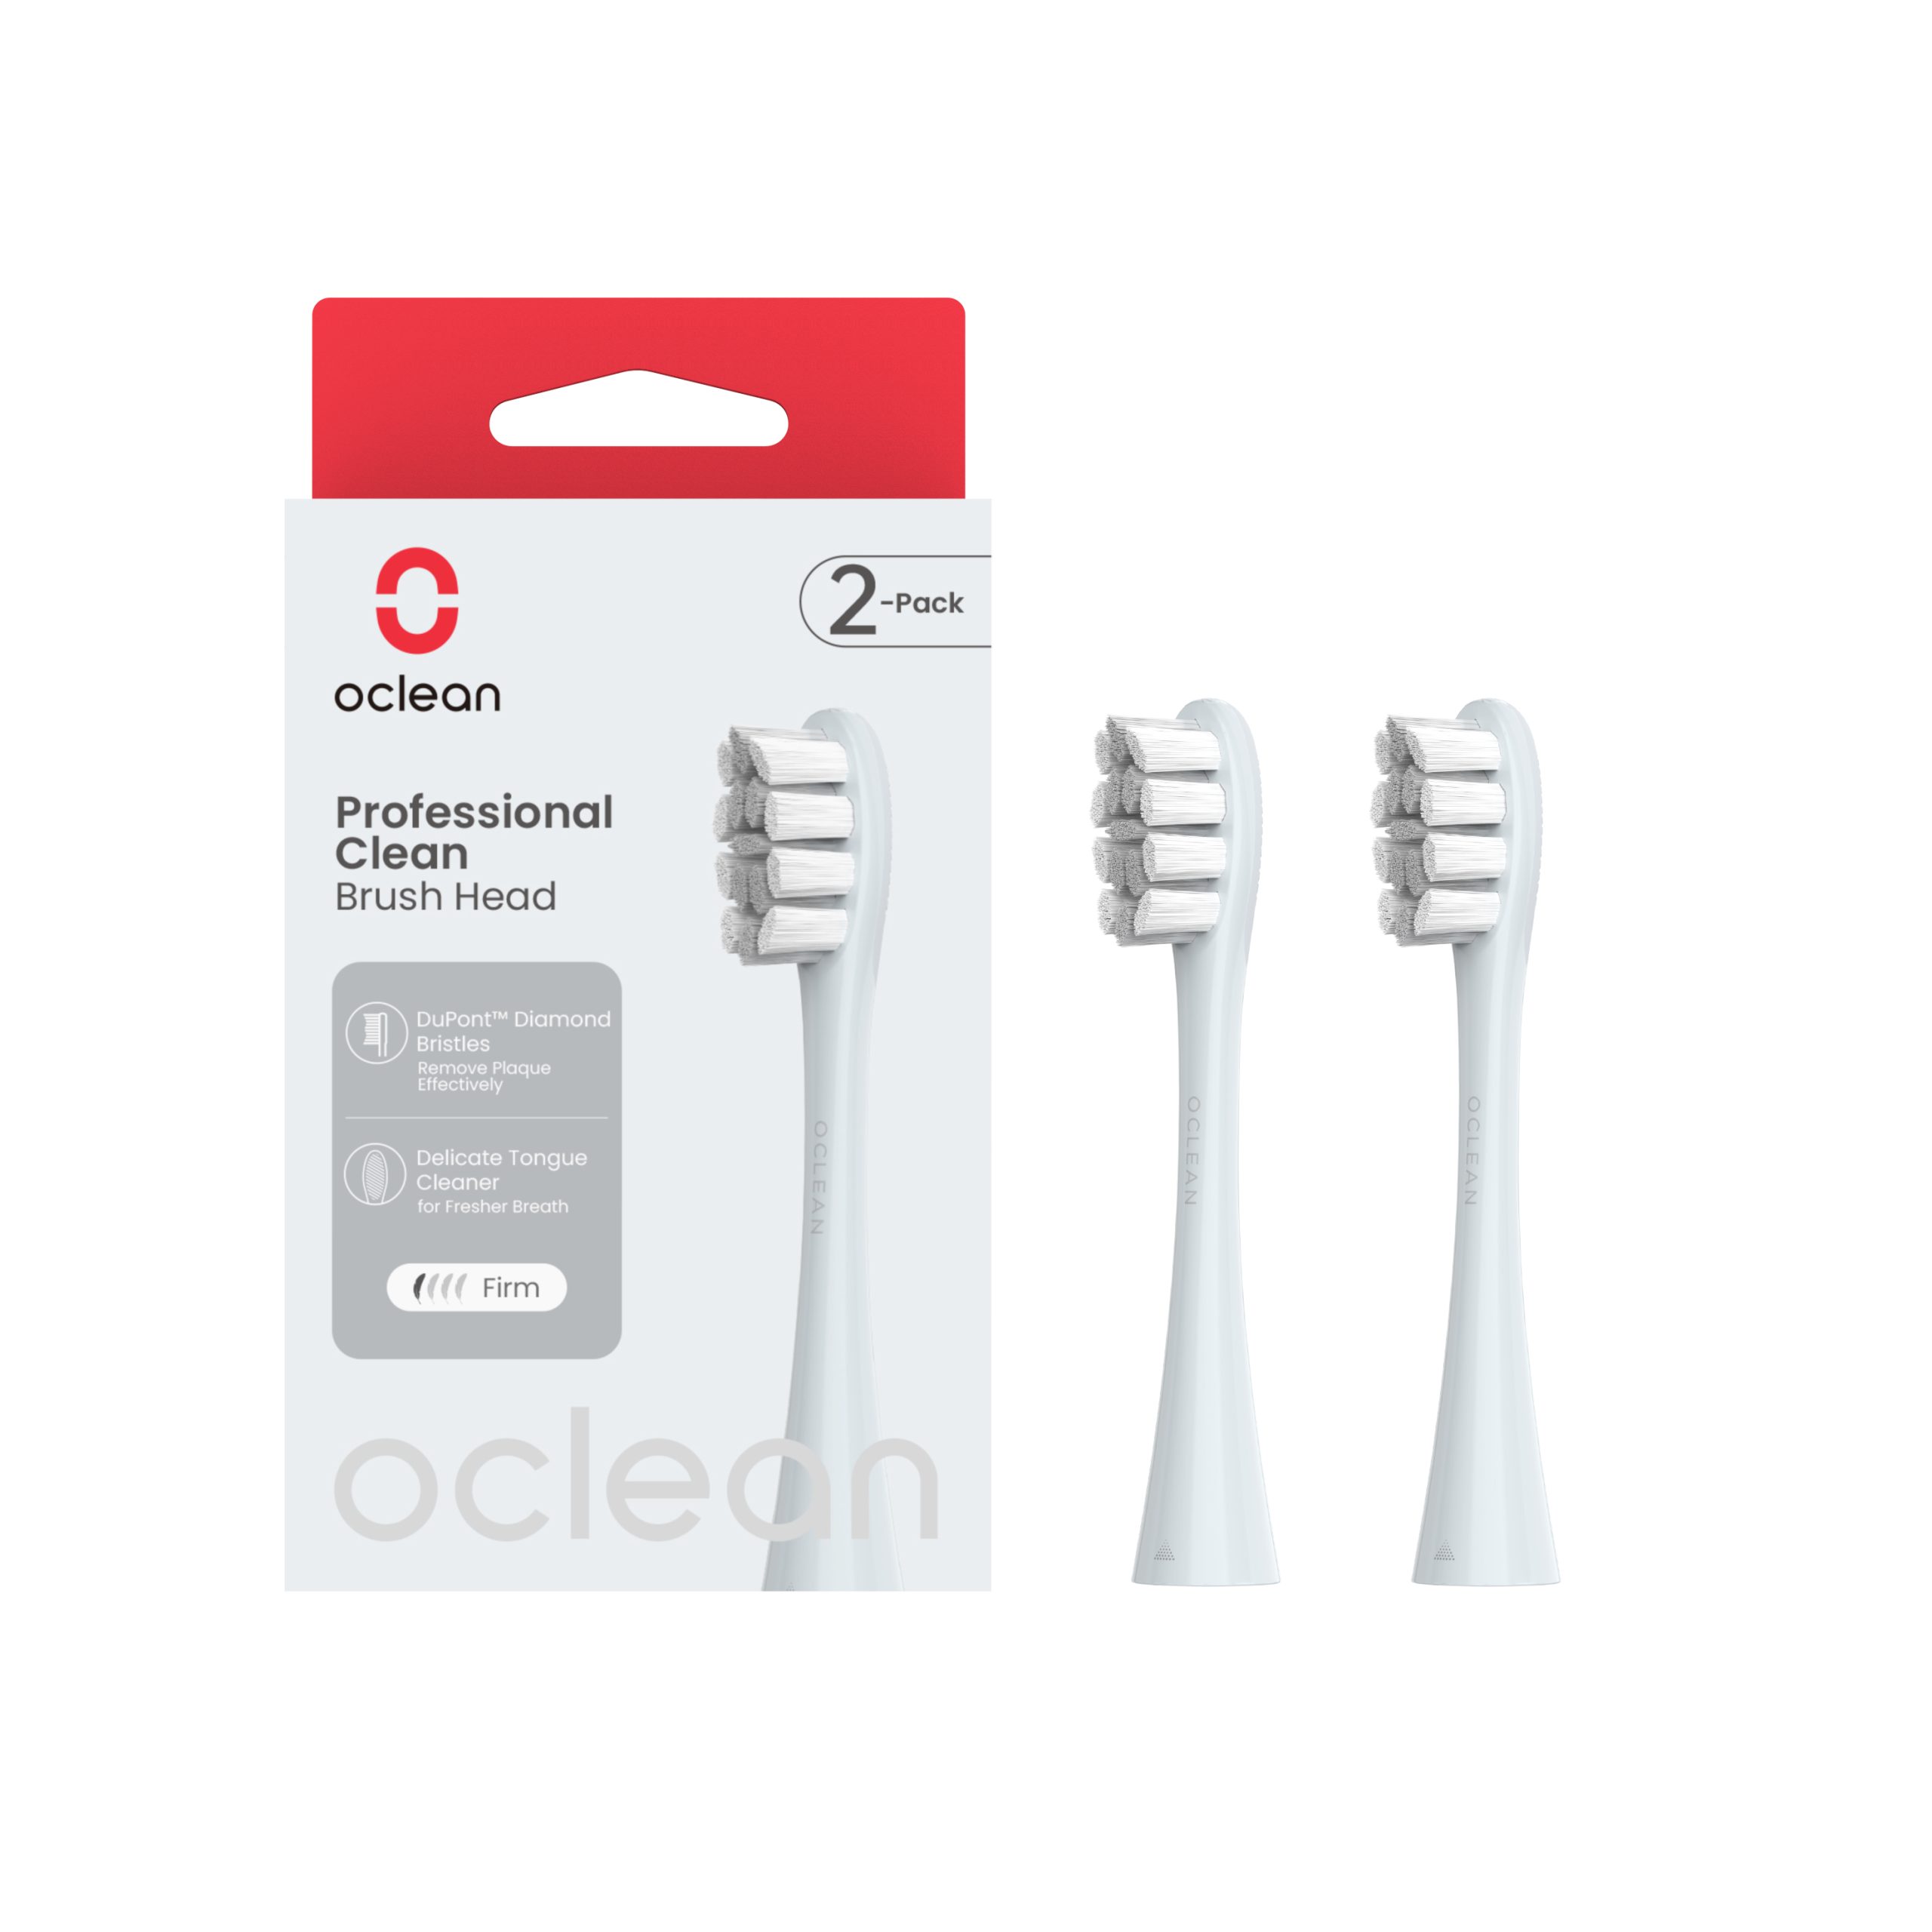 Oclean Professional Clean náhradní hlavice 2 ks stříbrné Oclean